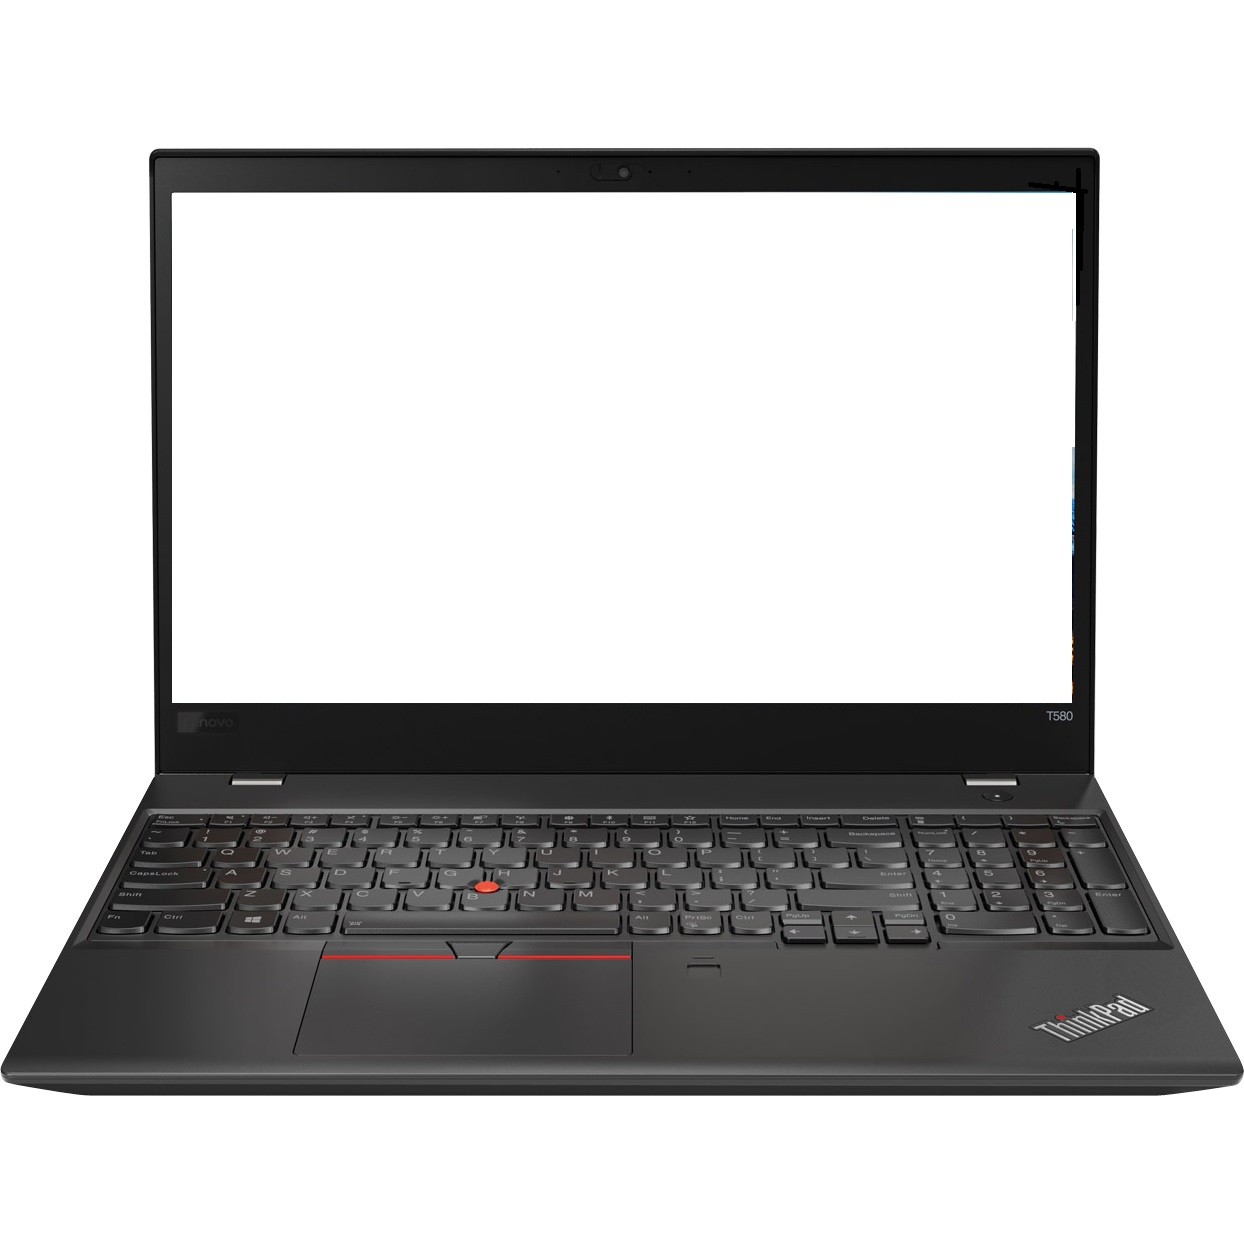 Lenovo ThinkPad T580 15.6" FHD i7-8550U 1.8GHz 8GB 256GB SSD W10P 20L9001MUS R